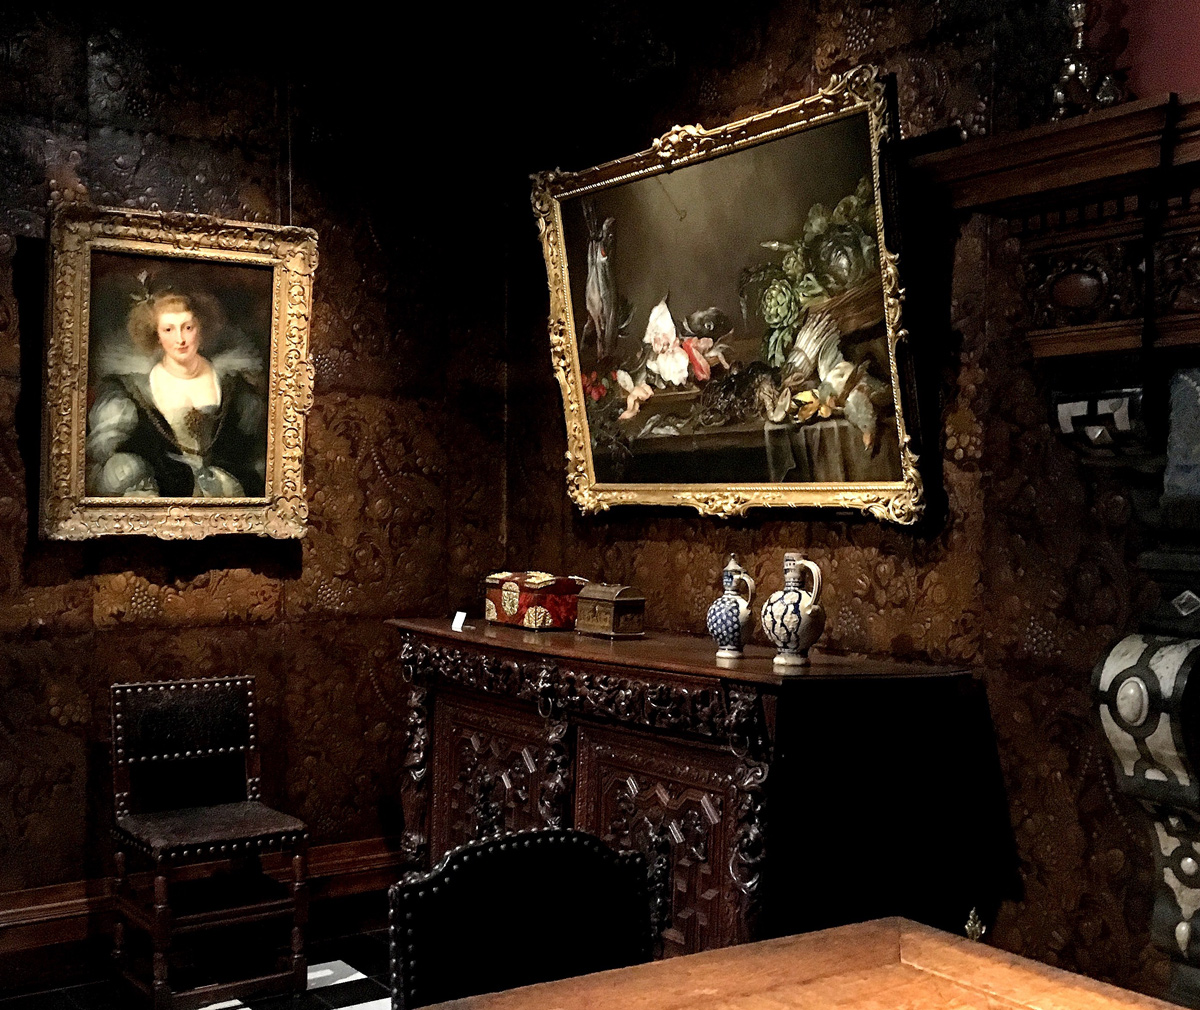 Rubens museum - exhibition